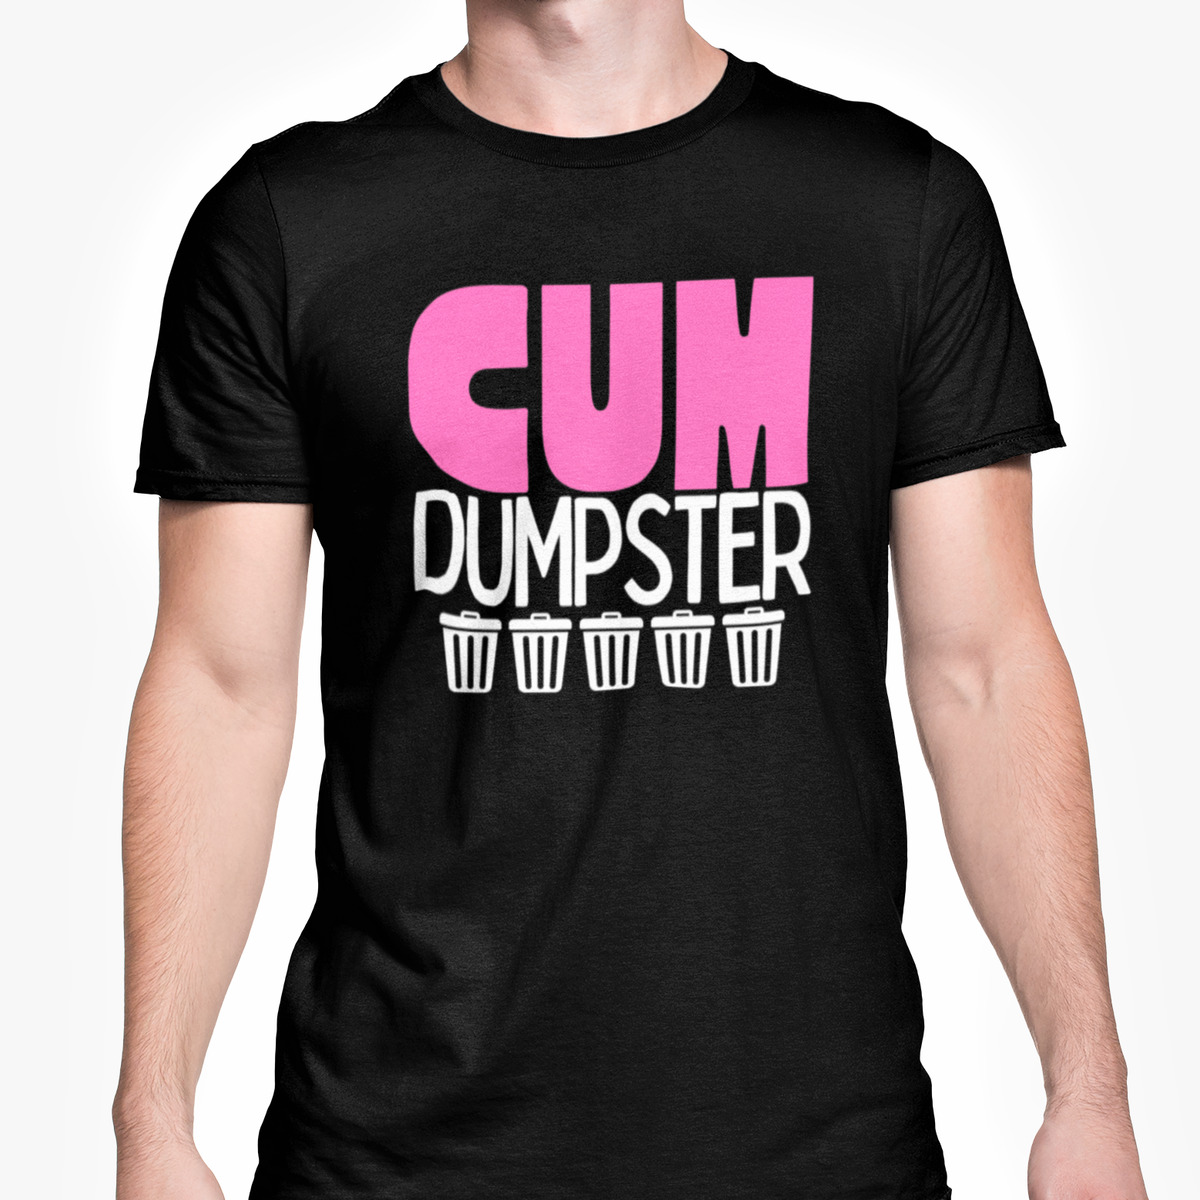 brittney mahar add cum dumpster t shirt photo